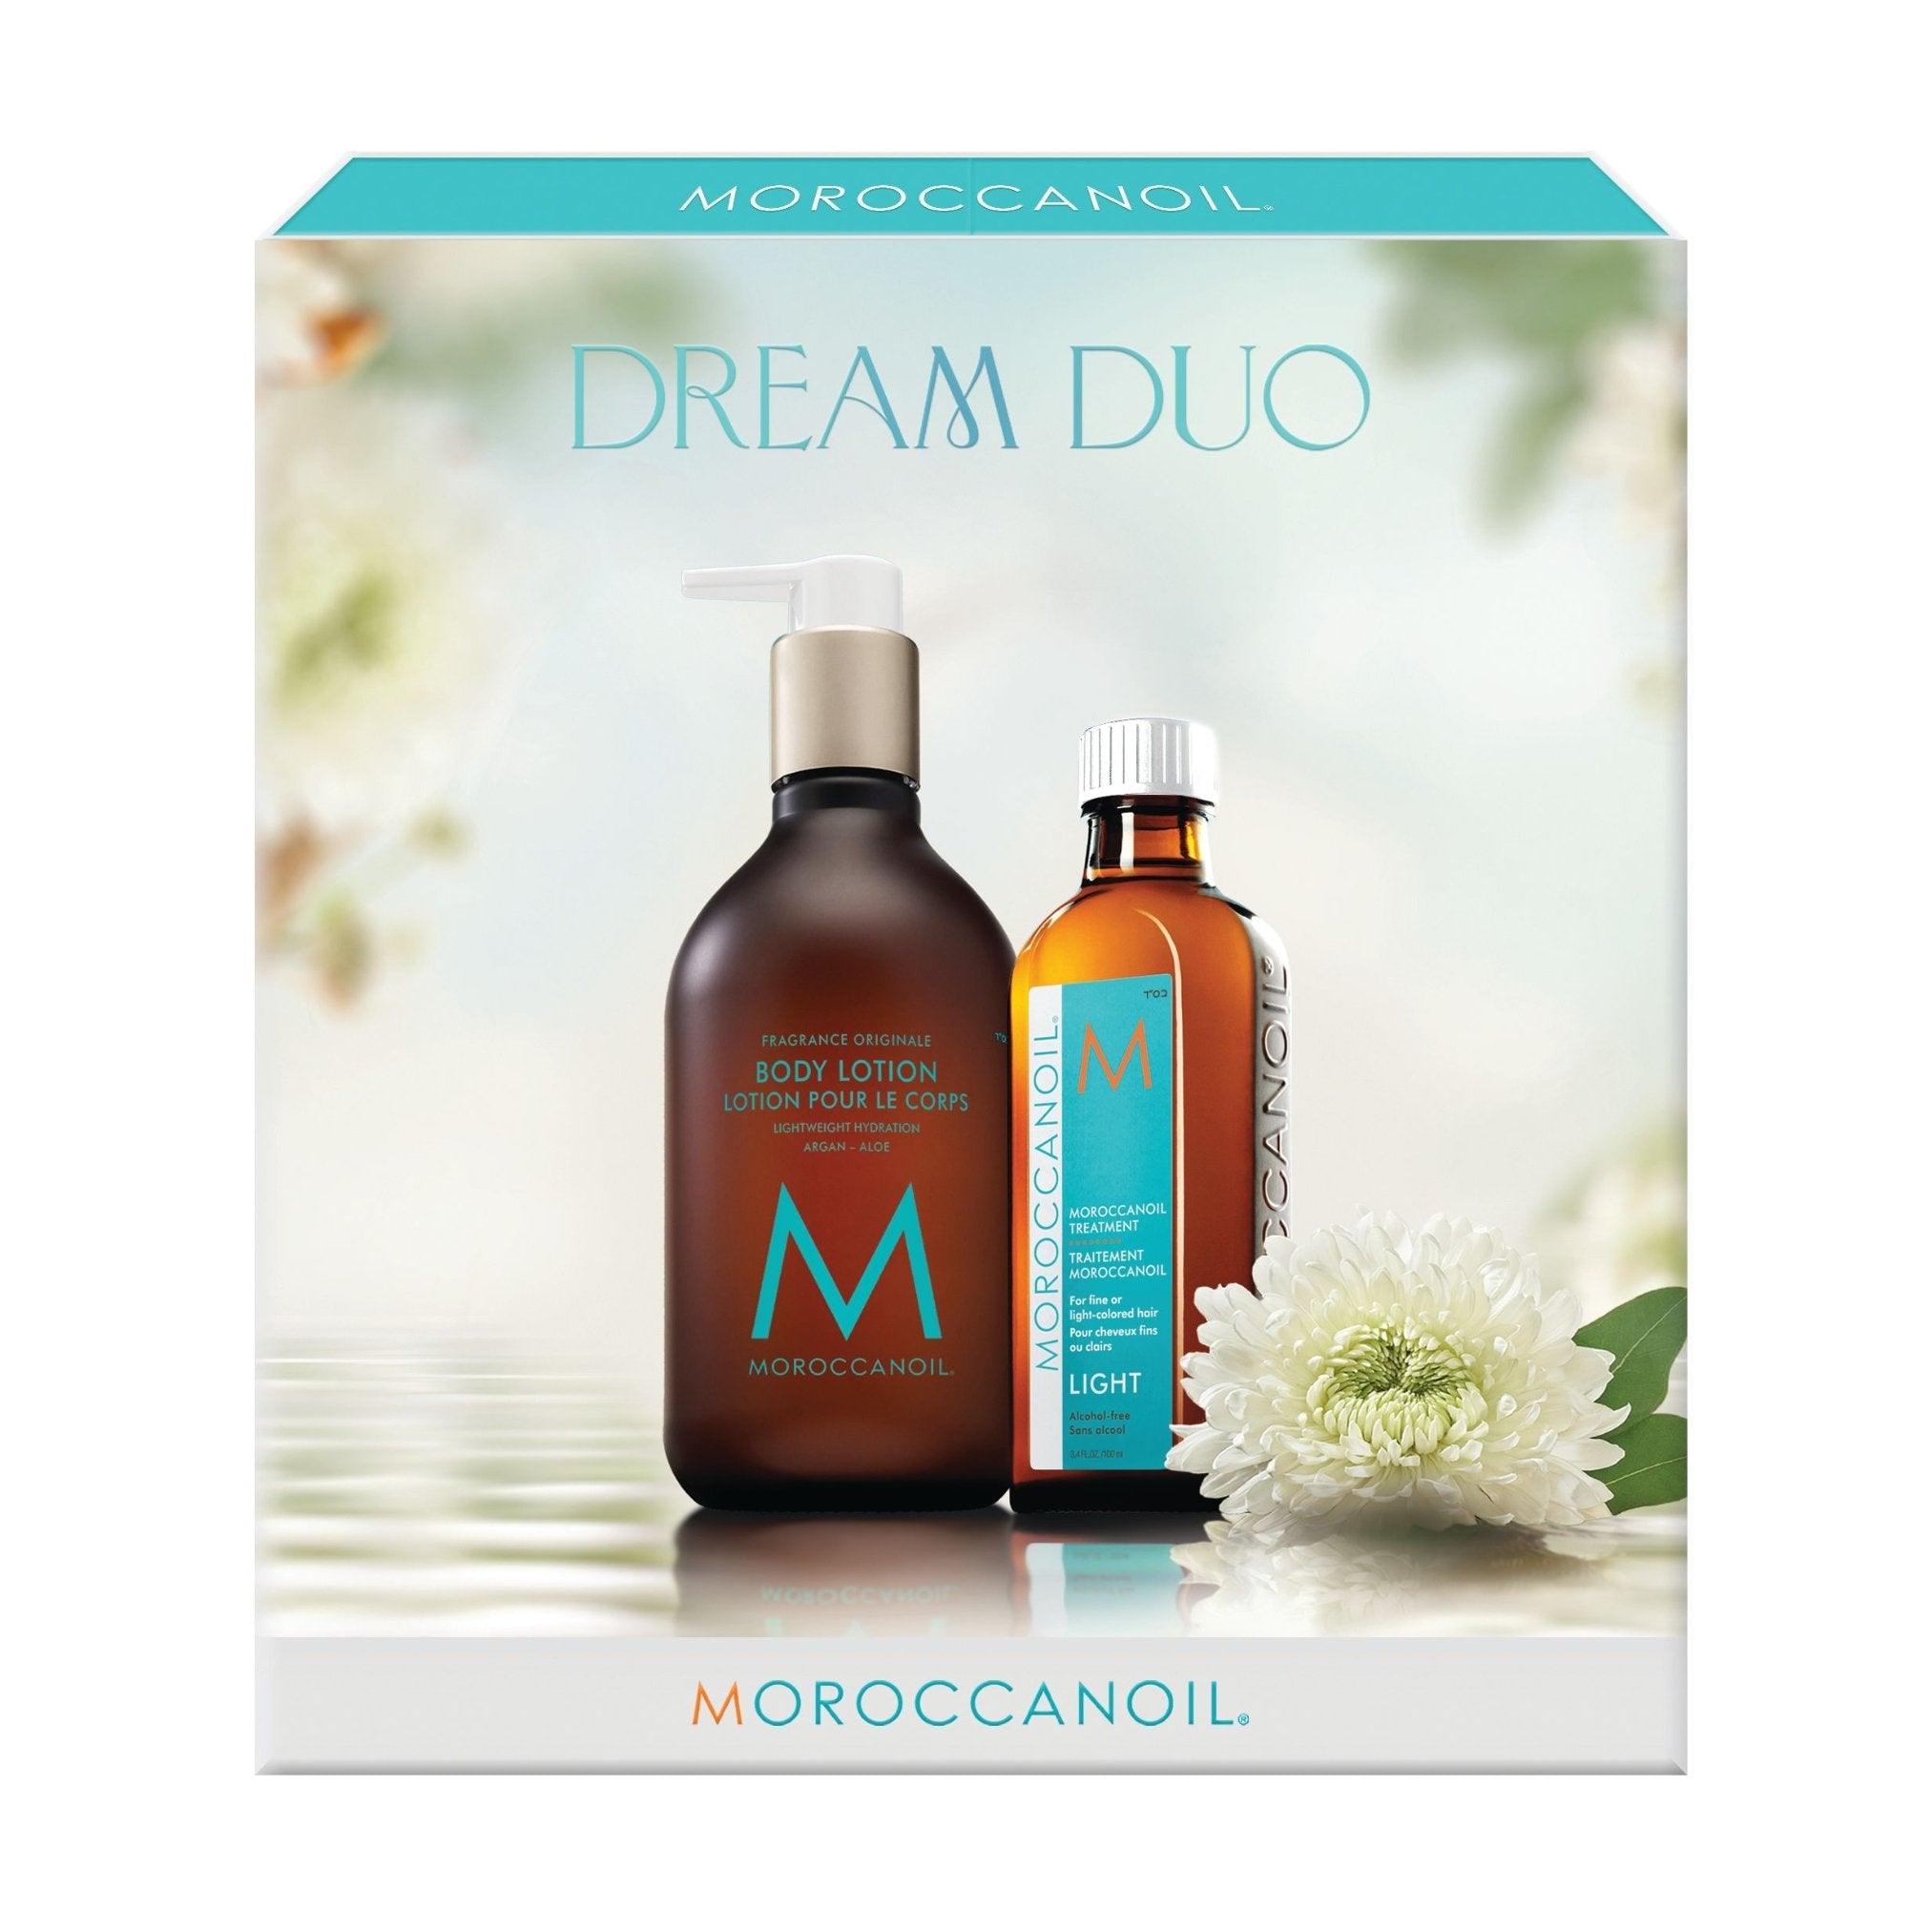 Moroccanoil. Duo de rêves Léger - Concept C. Shop